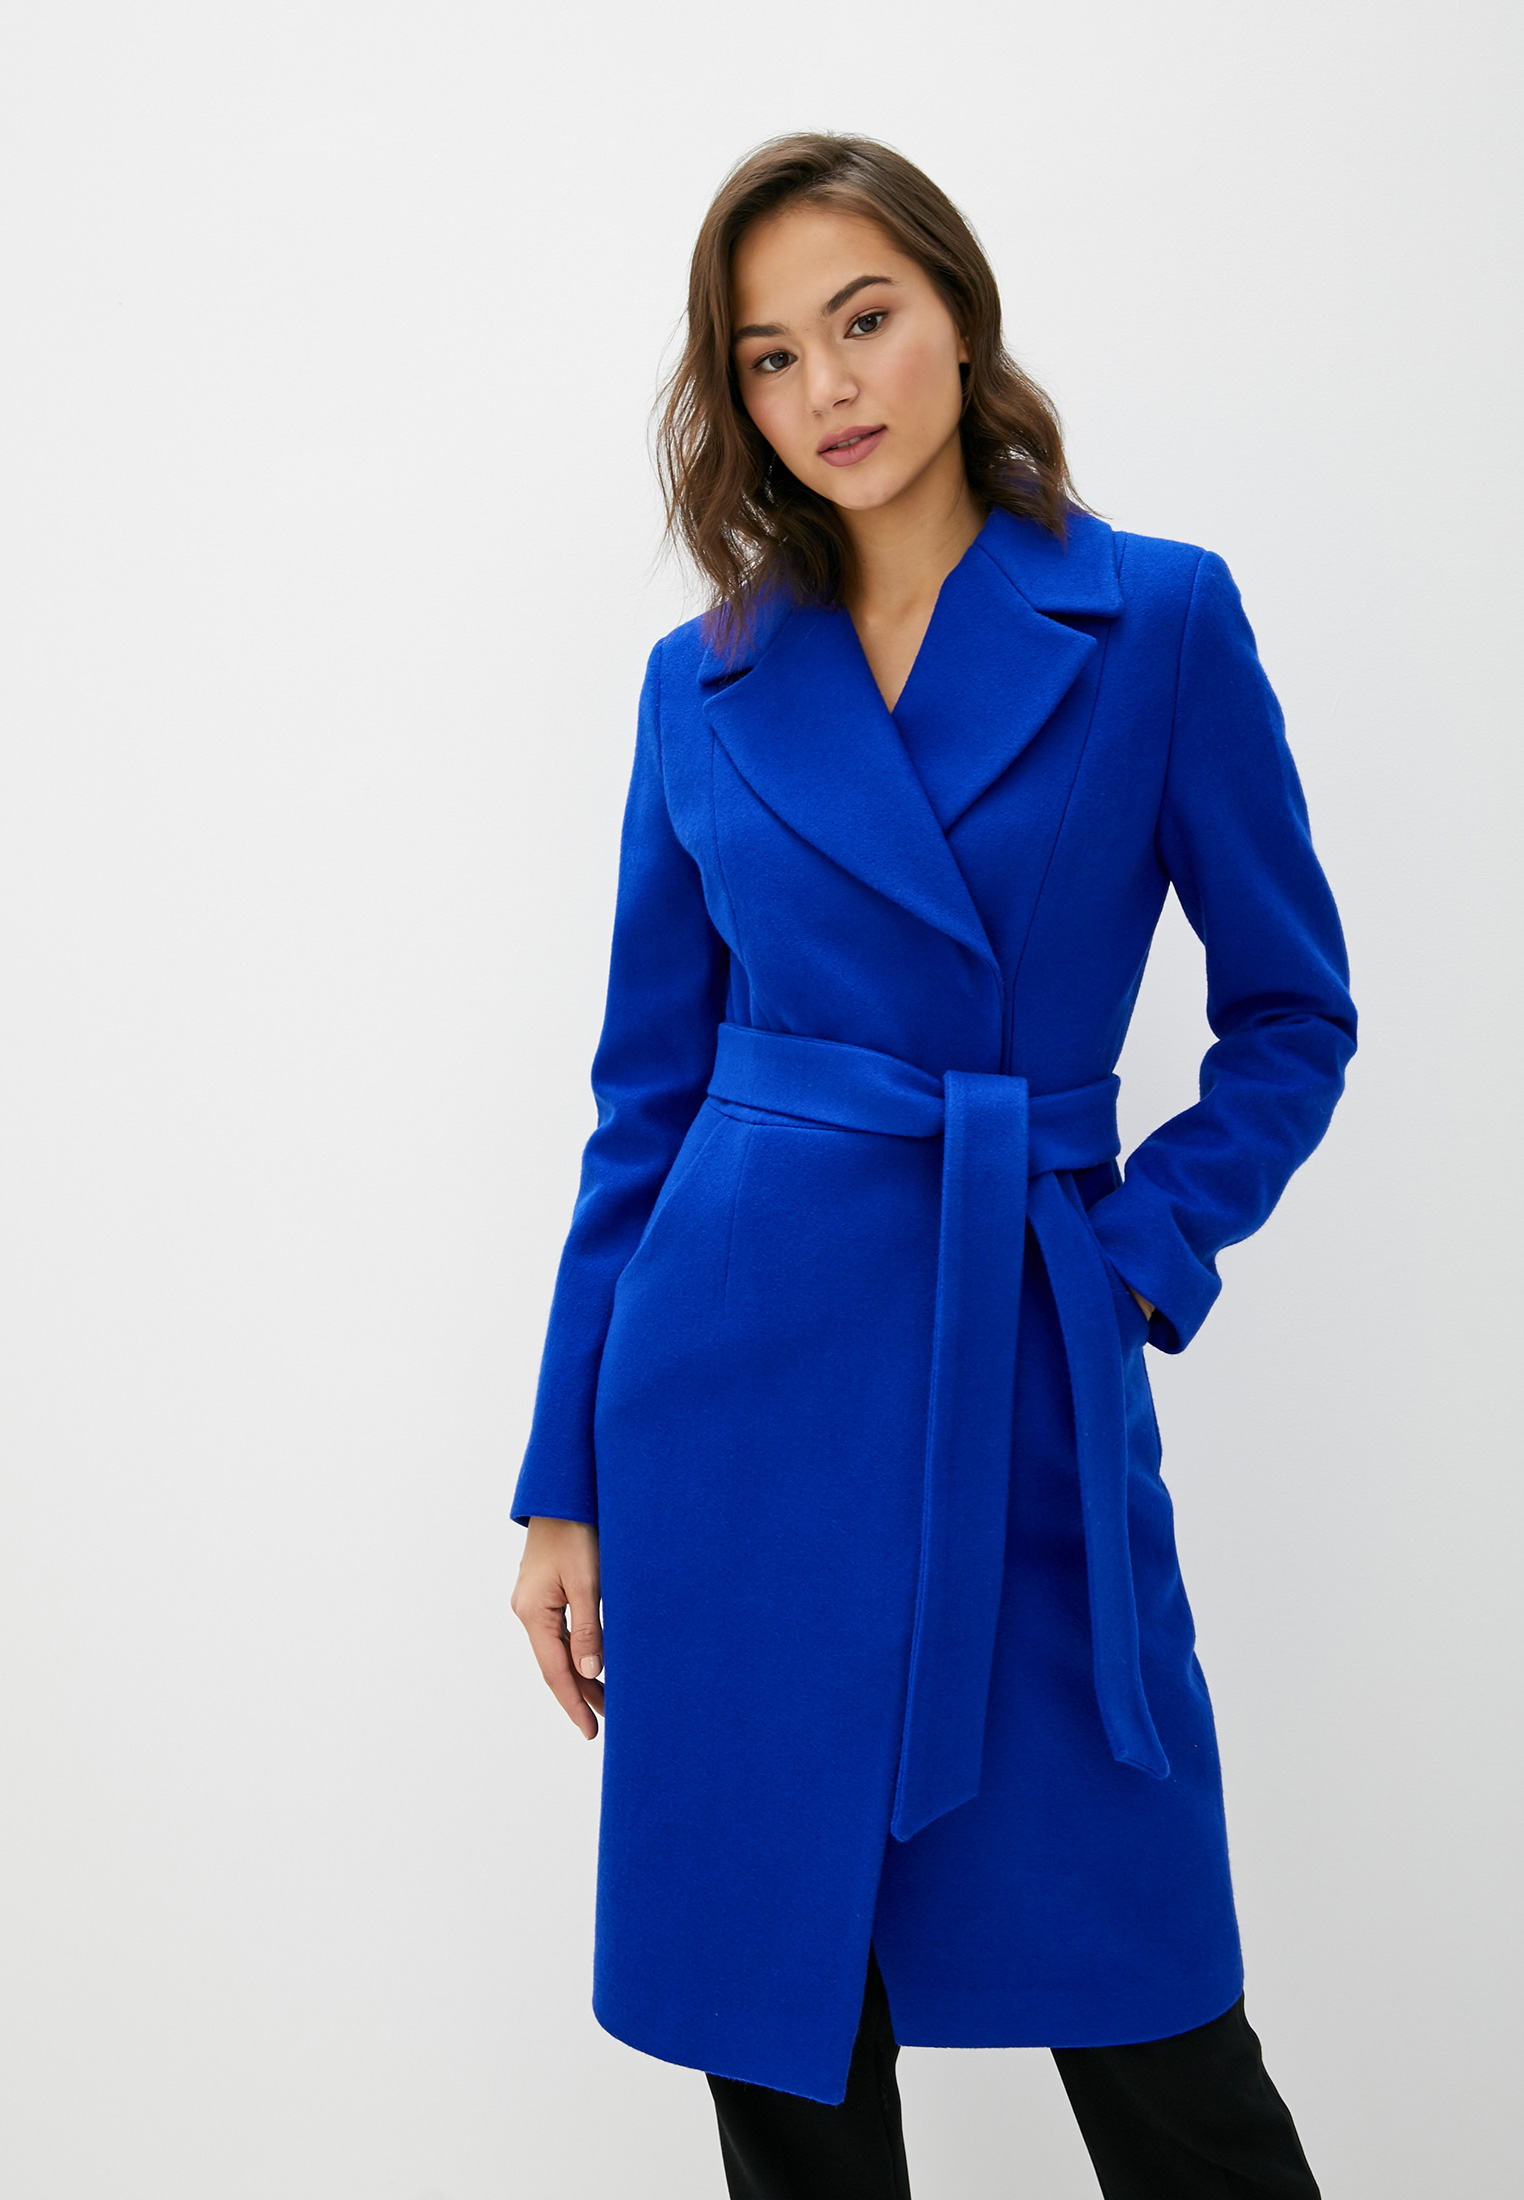 Синее пальто купить. Синее пальто. Женское пальто. Синее пальто женское. Пальто синего цвета.